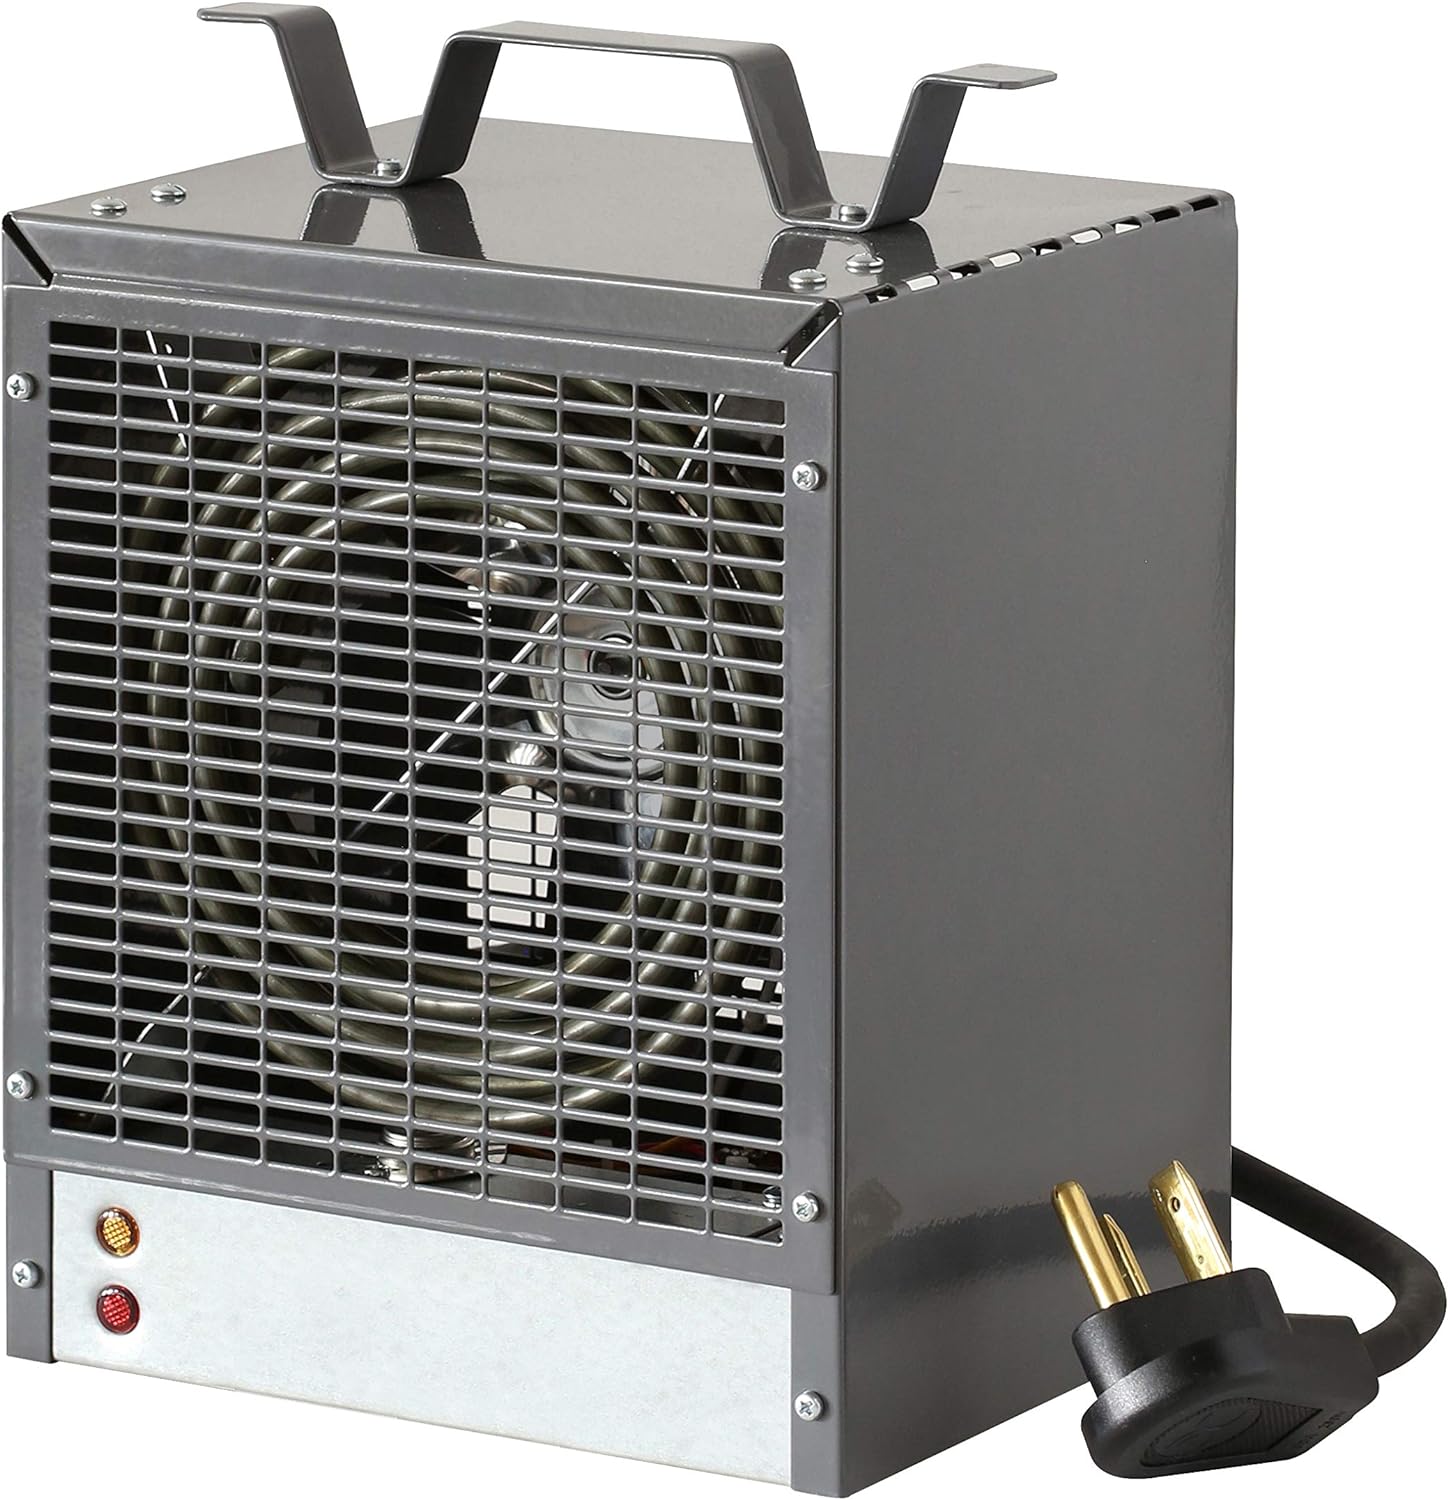 Dimplex DCH Series Portable Construction Heater (Model: DCH4831LG), 16377 BTU, 240 Volt, 4800 Watt, Grey